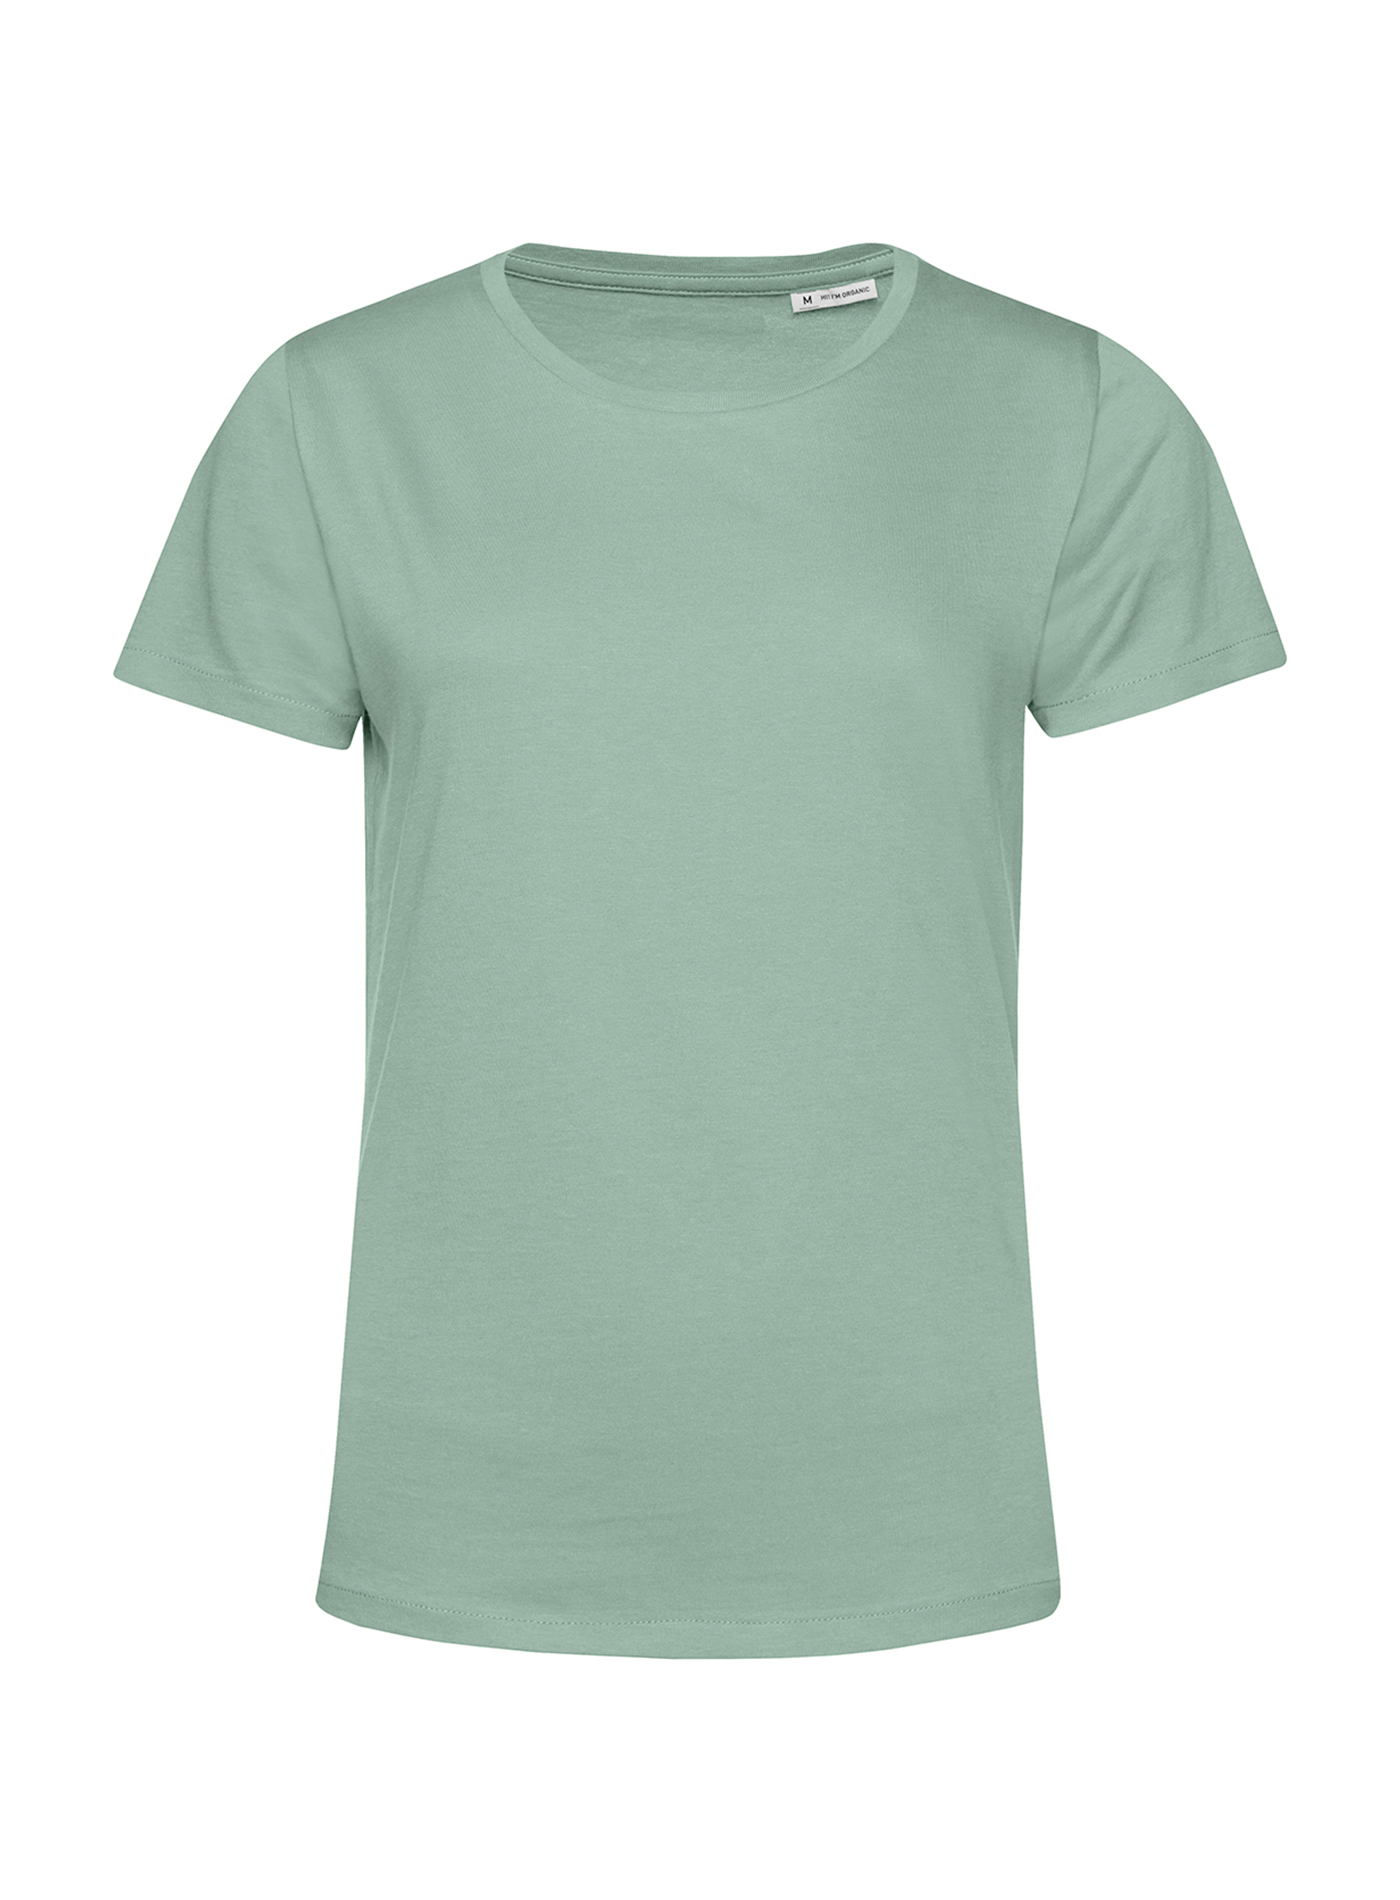 Dámské tričko B&C Collection Organic - Mentolově zelená M